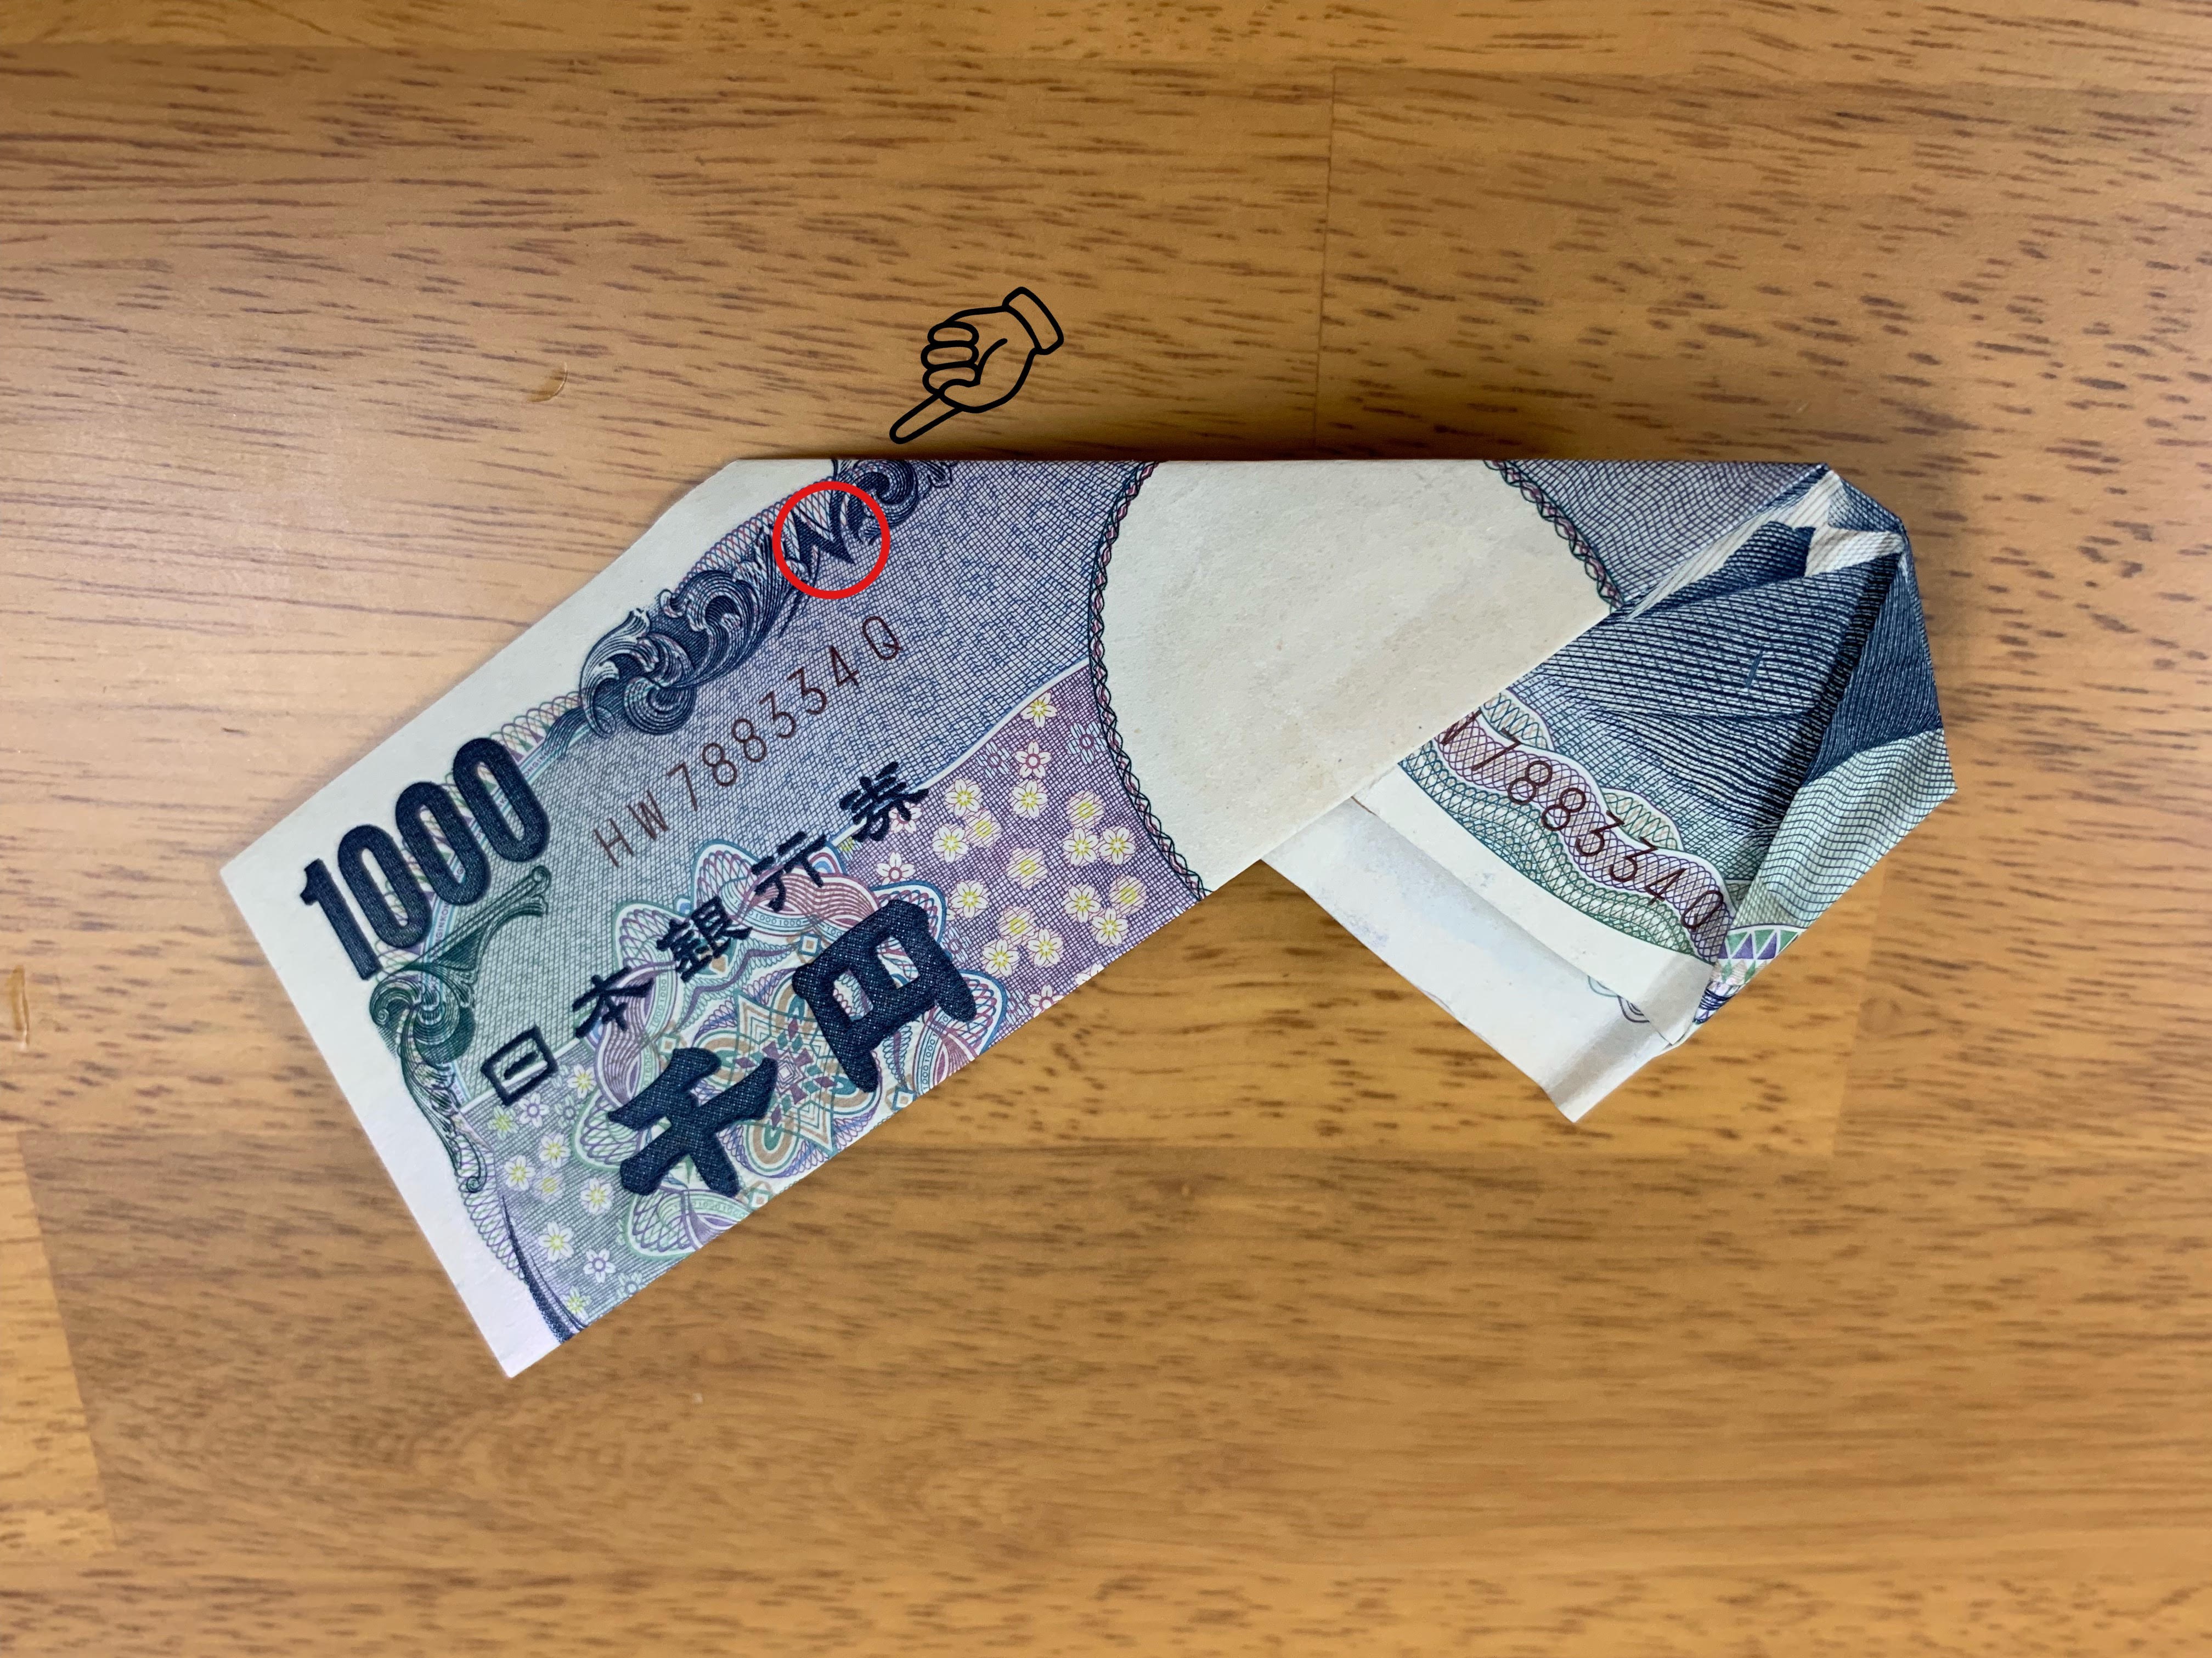 ターバン野口 お札 千円札のおもしろい折り方の画像8